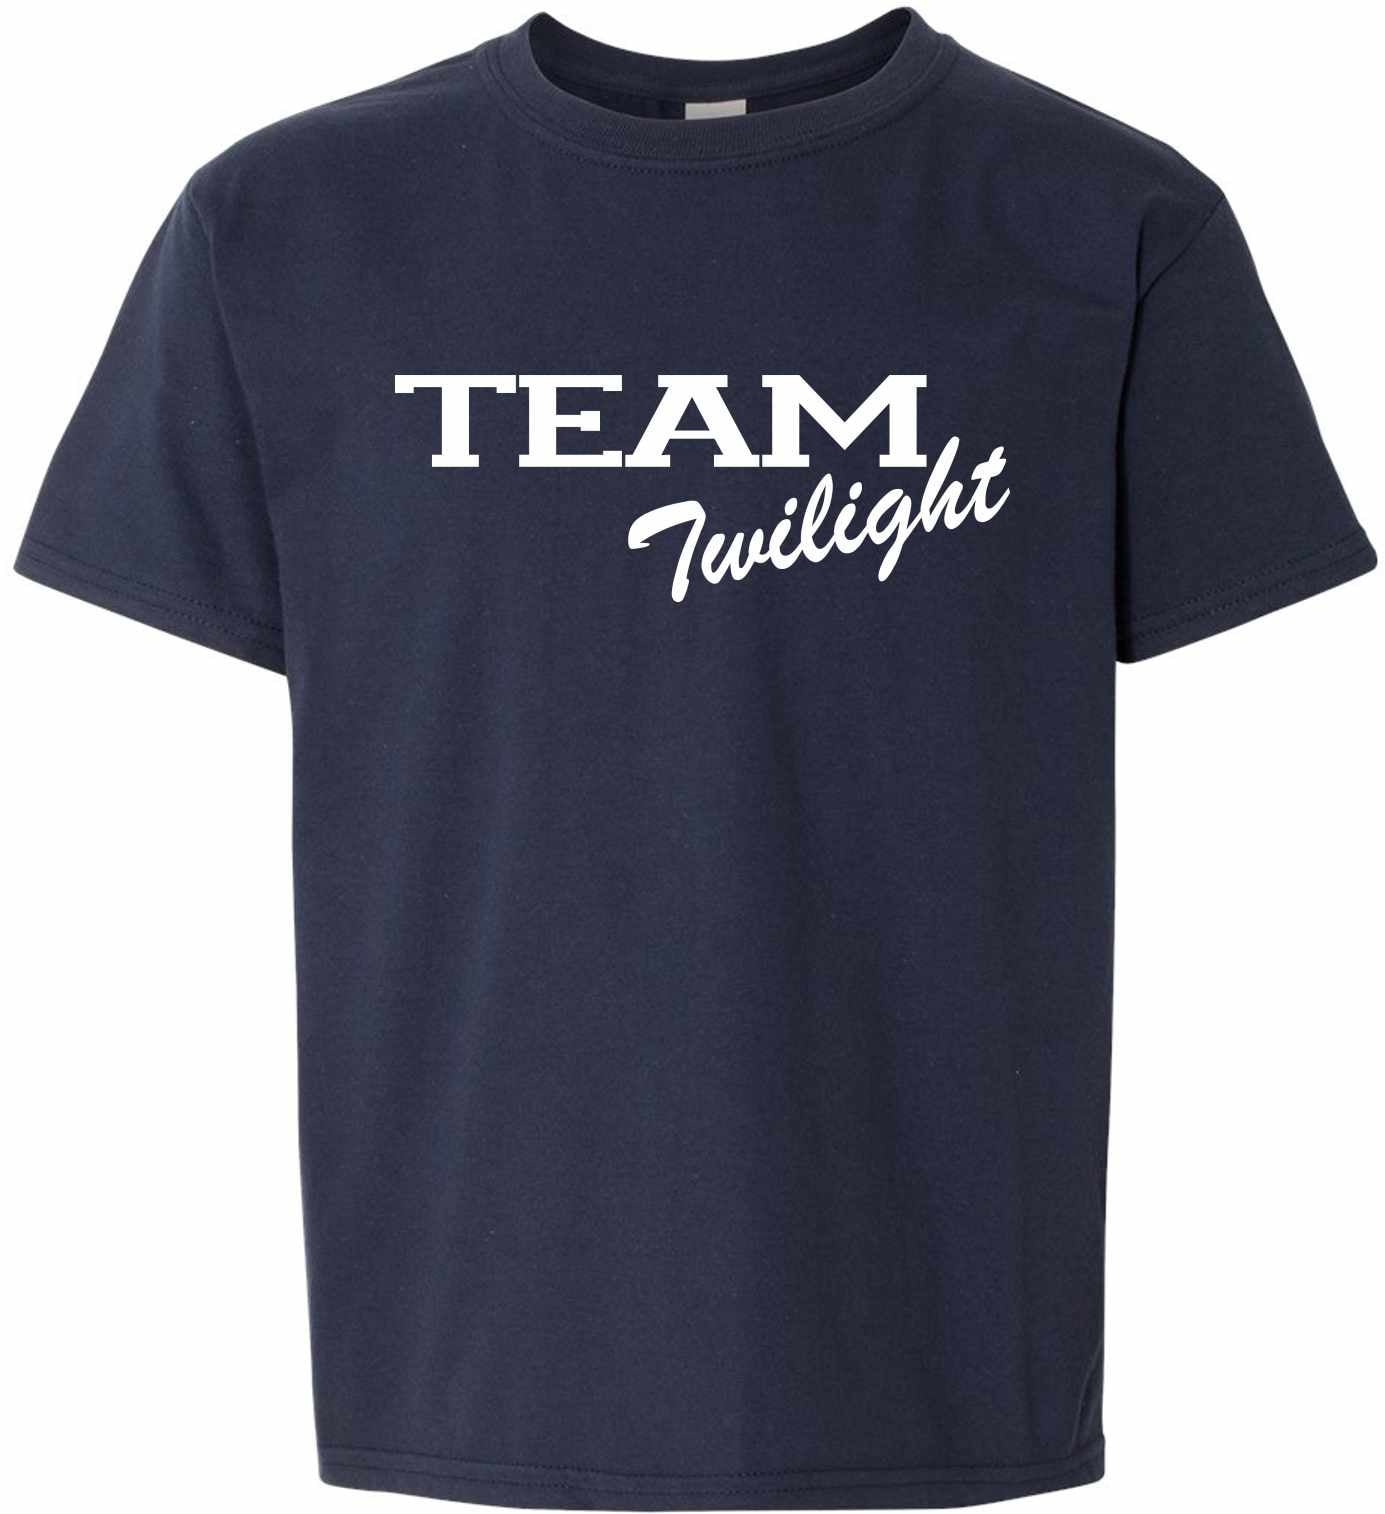 TEAM TWILIGHT on Kids T-Shirt (#323-201)